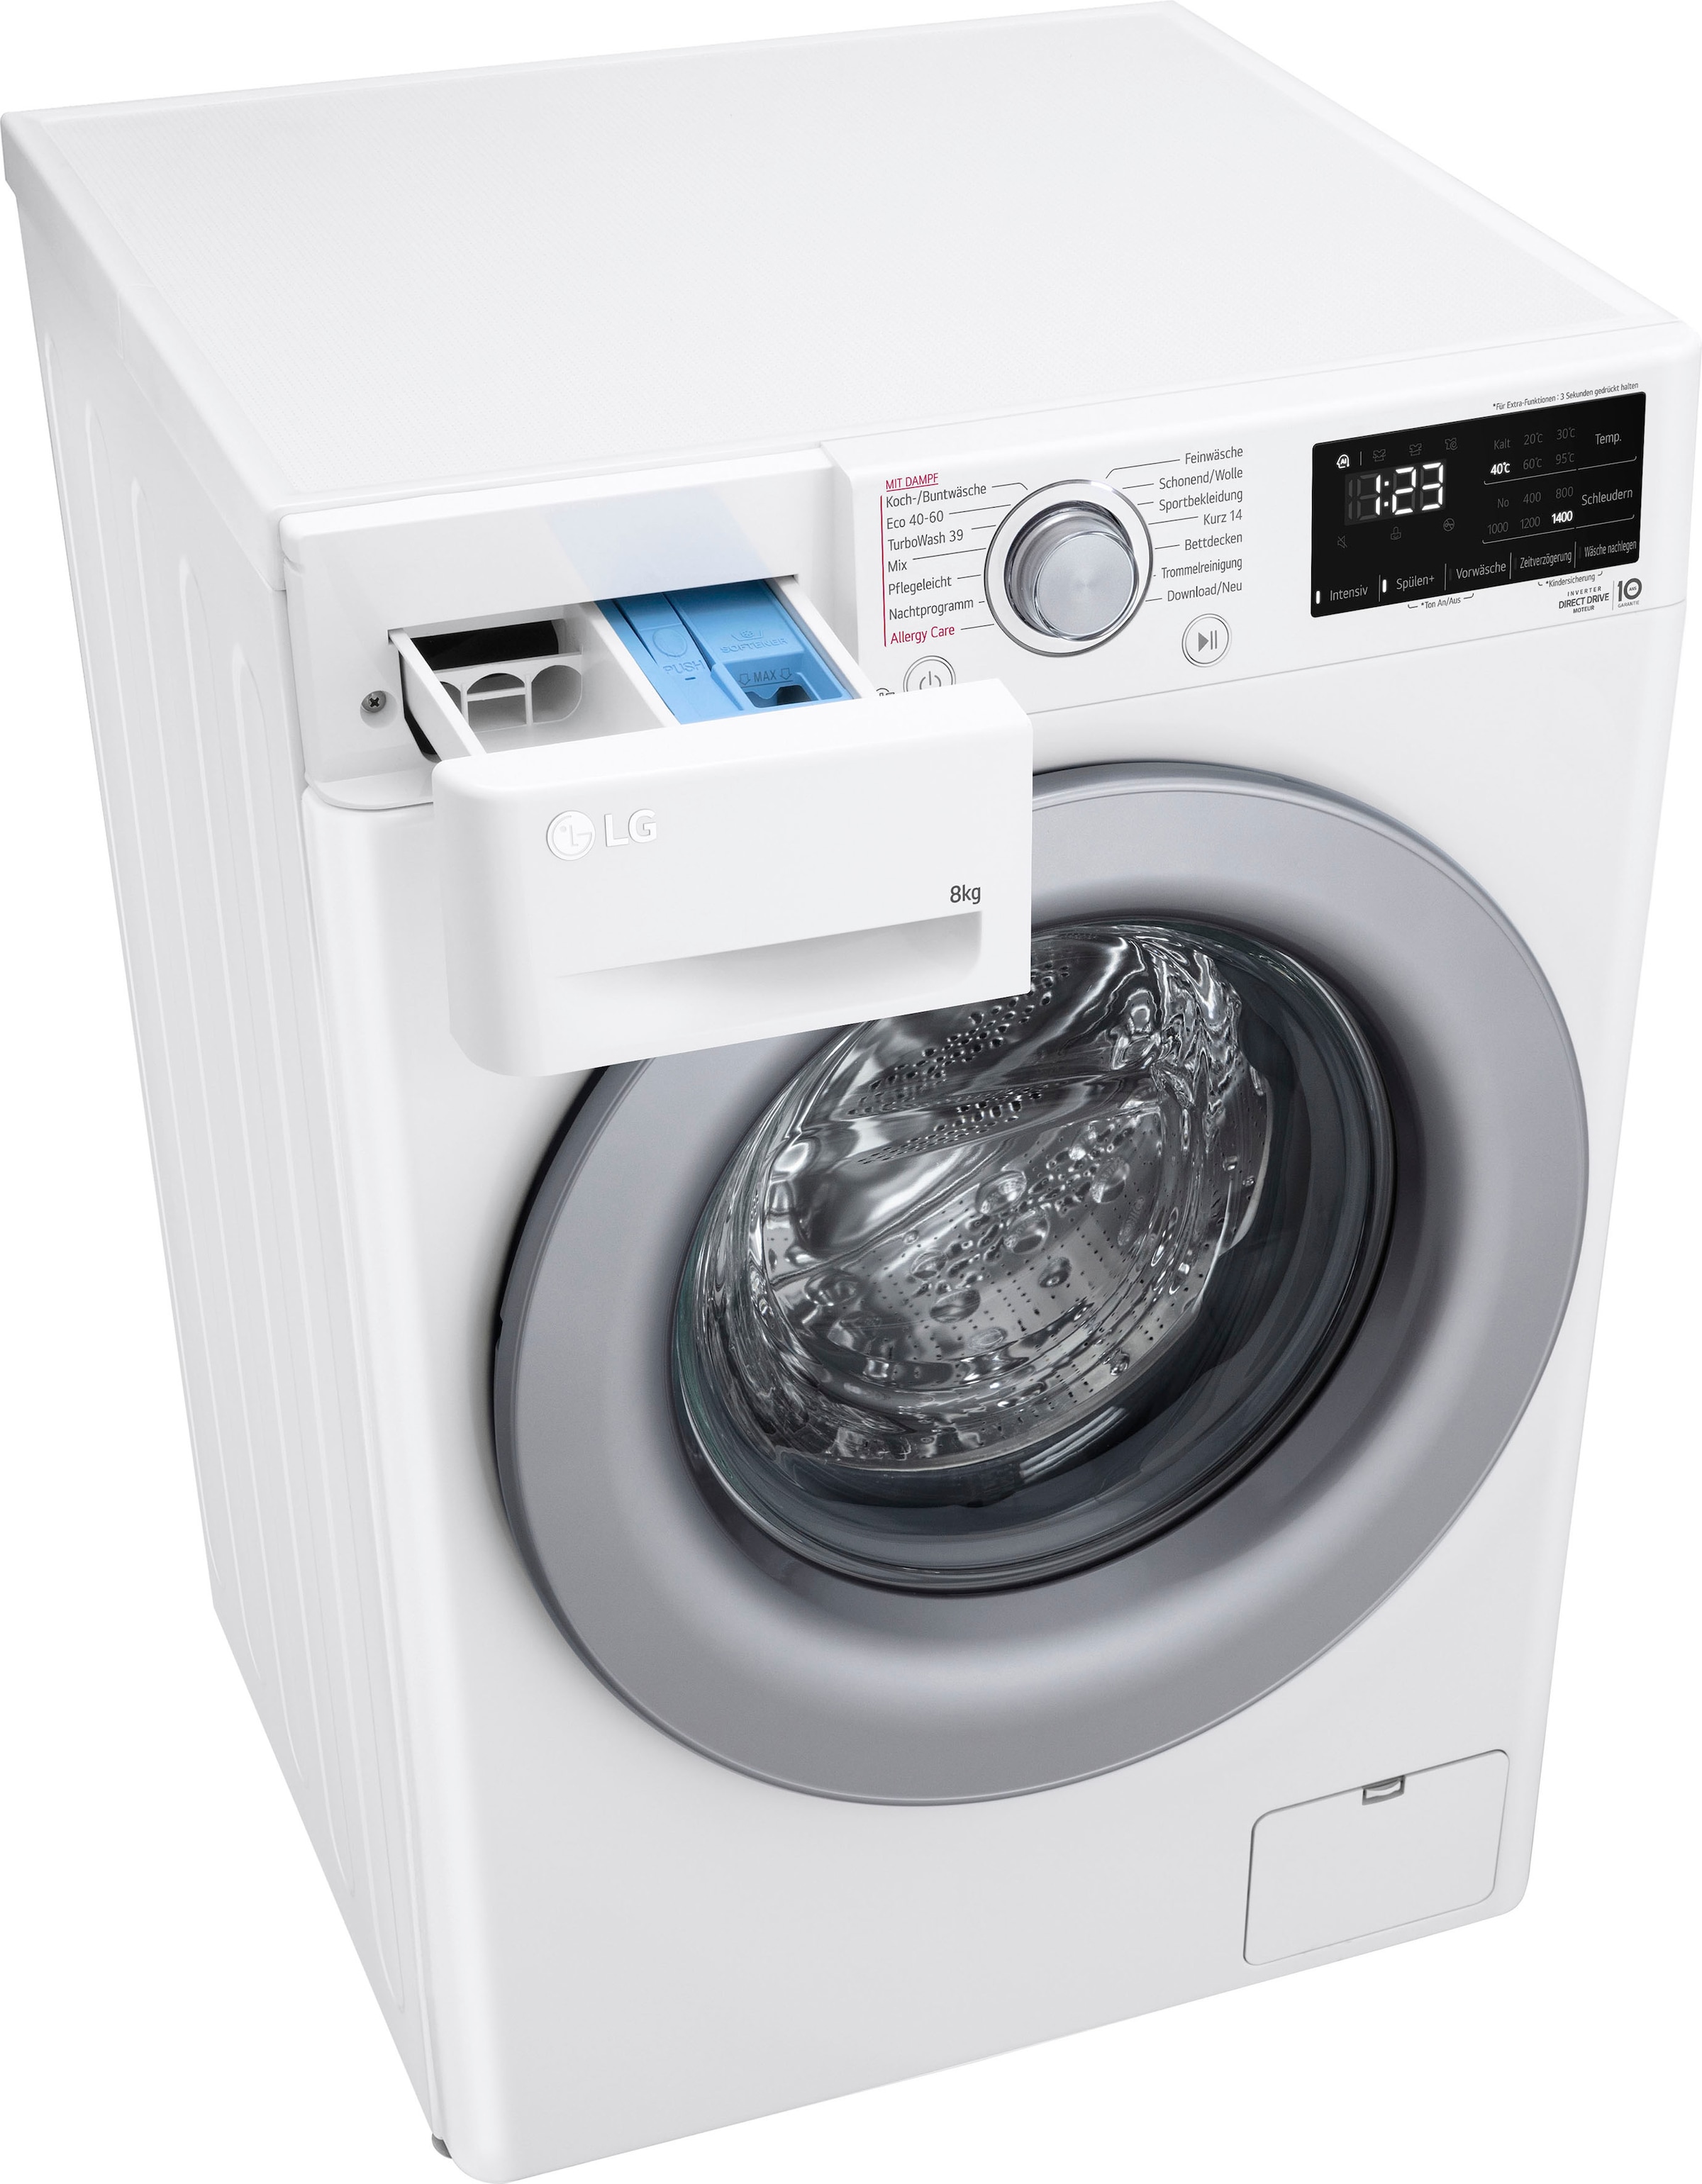 bestellen bei »F4WV3284«, Serie Waschmaschine LG U/min 1400 OTTO kg, 3, F4WV3284, 8